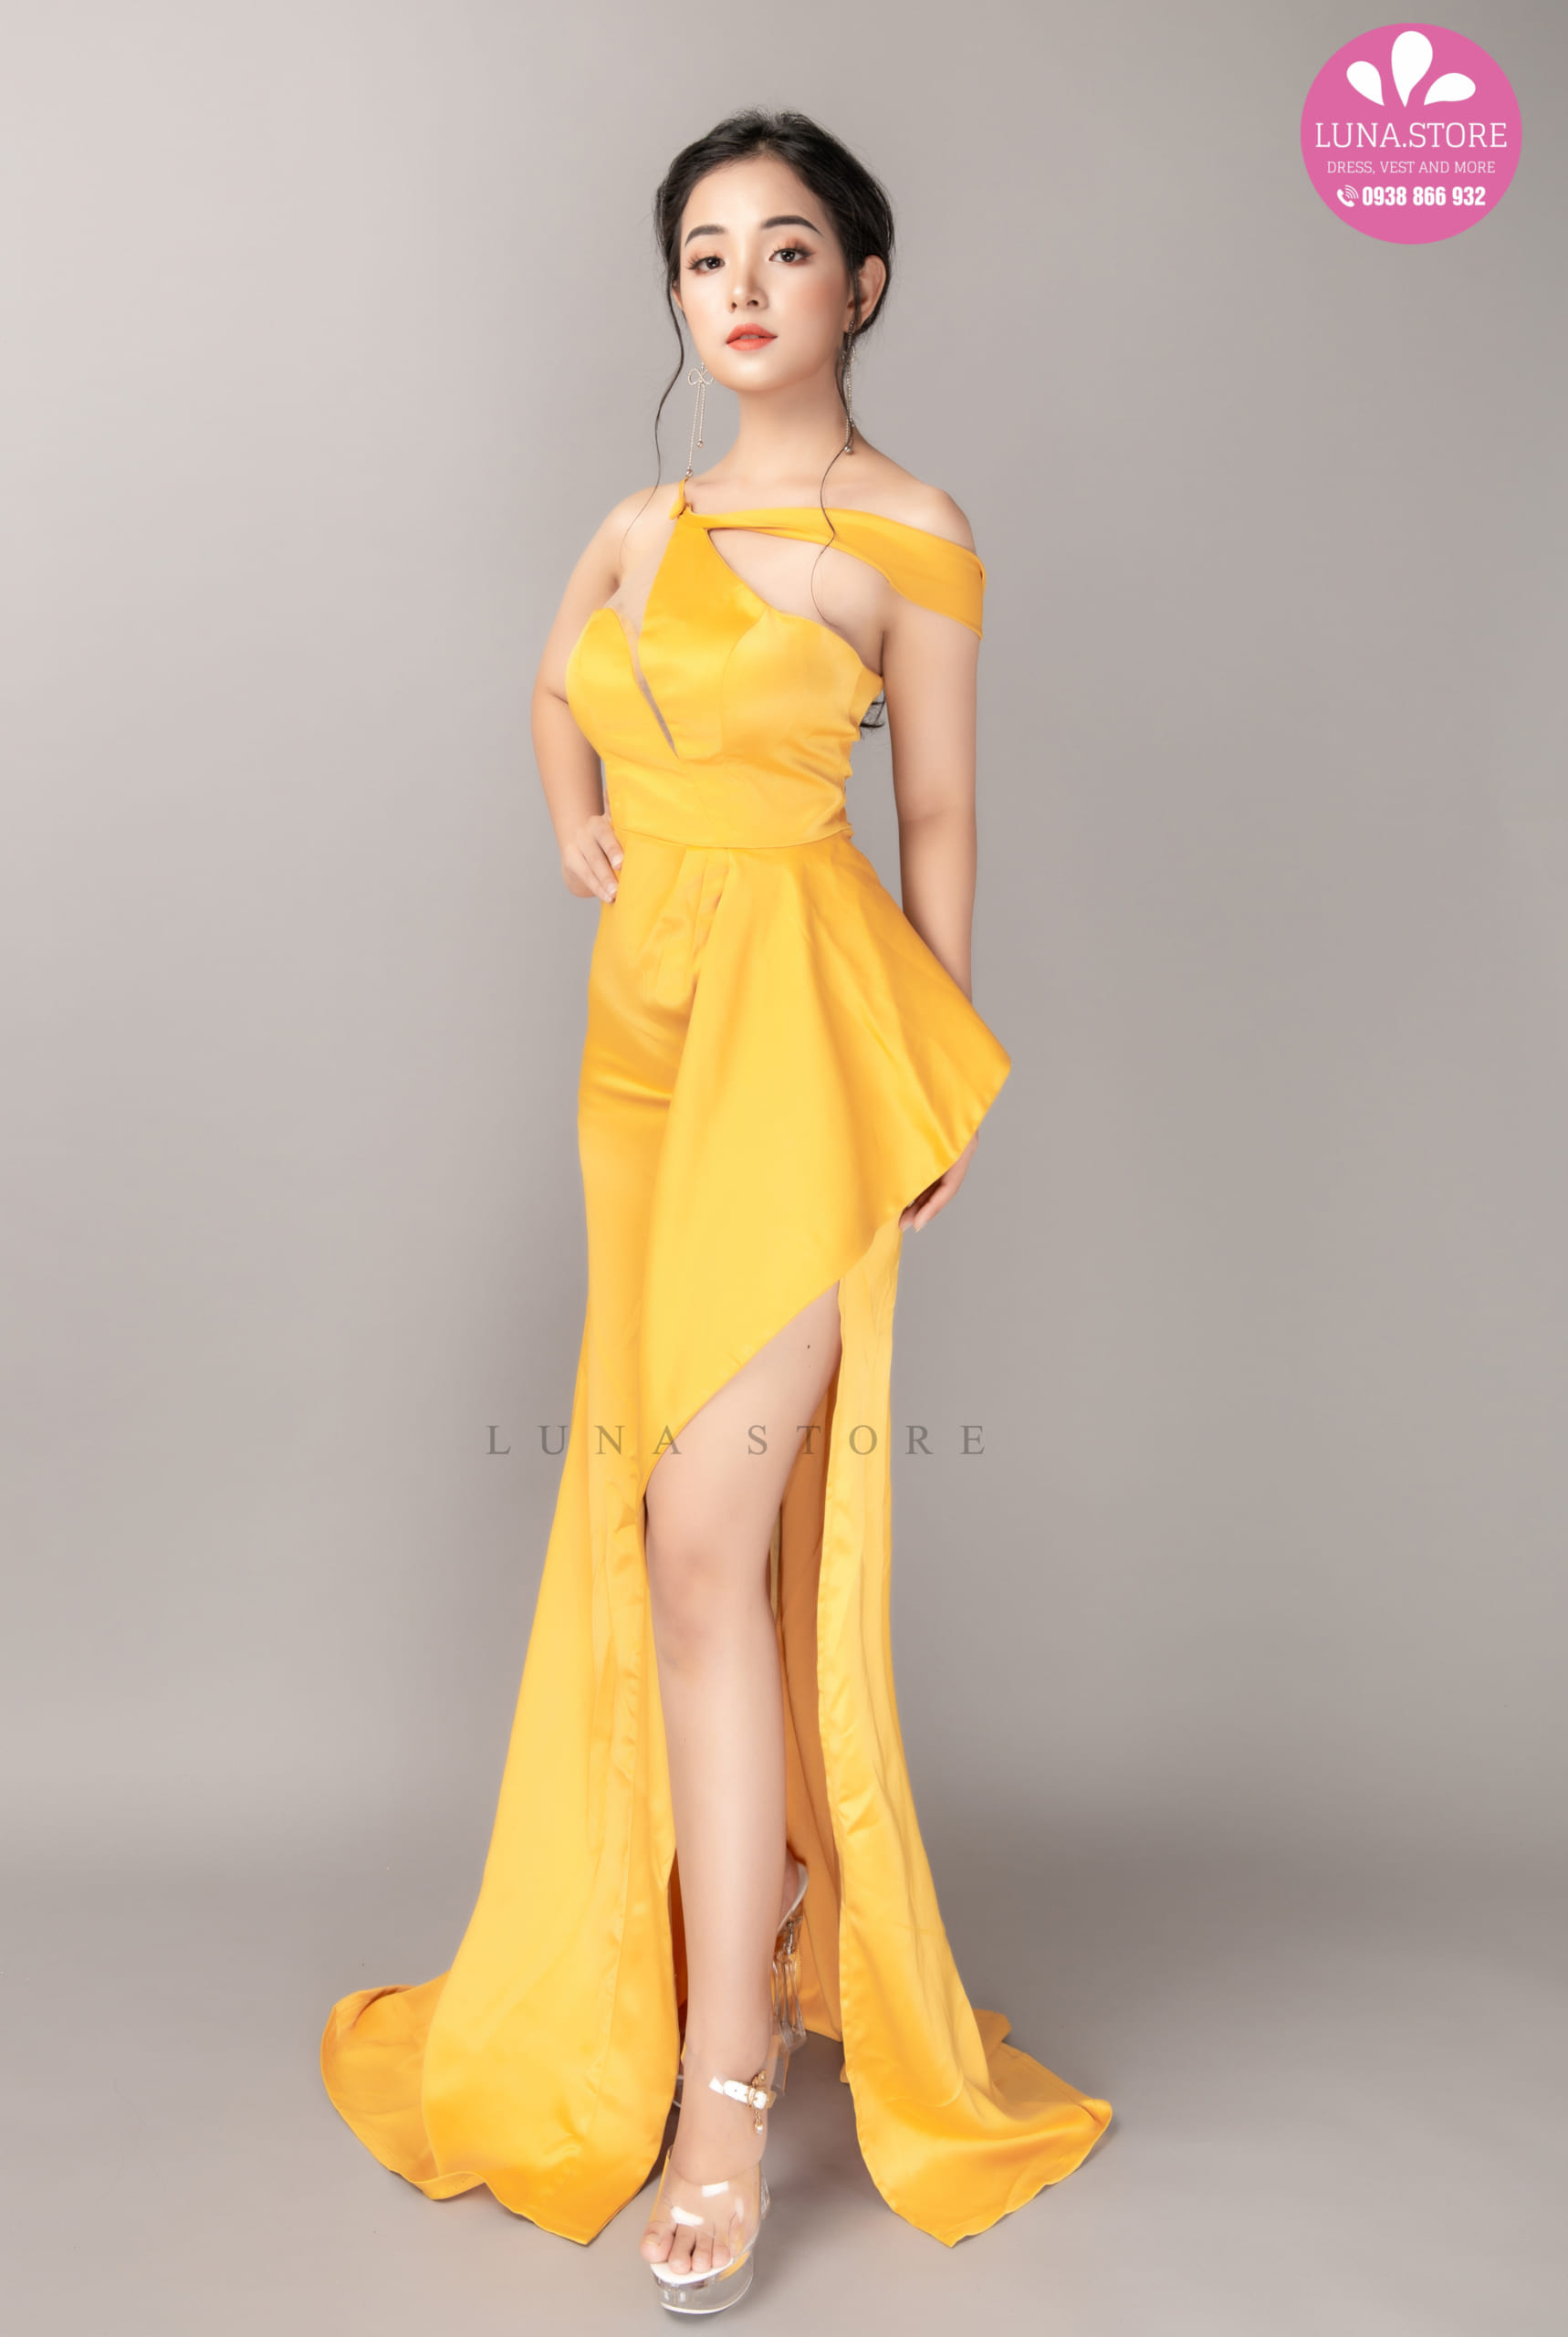 Tổng hợp hơn 87 các mẫu váy dạ hội đẹp mới nhất  cdgdbentreeduvn